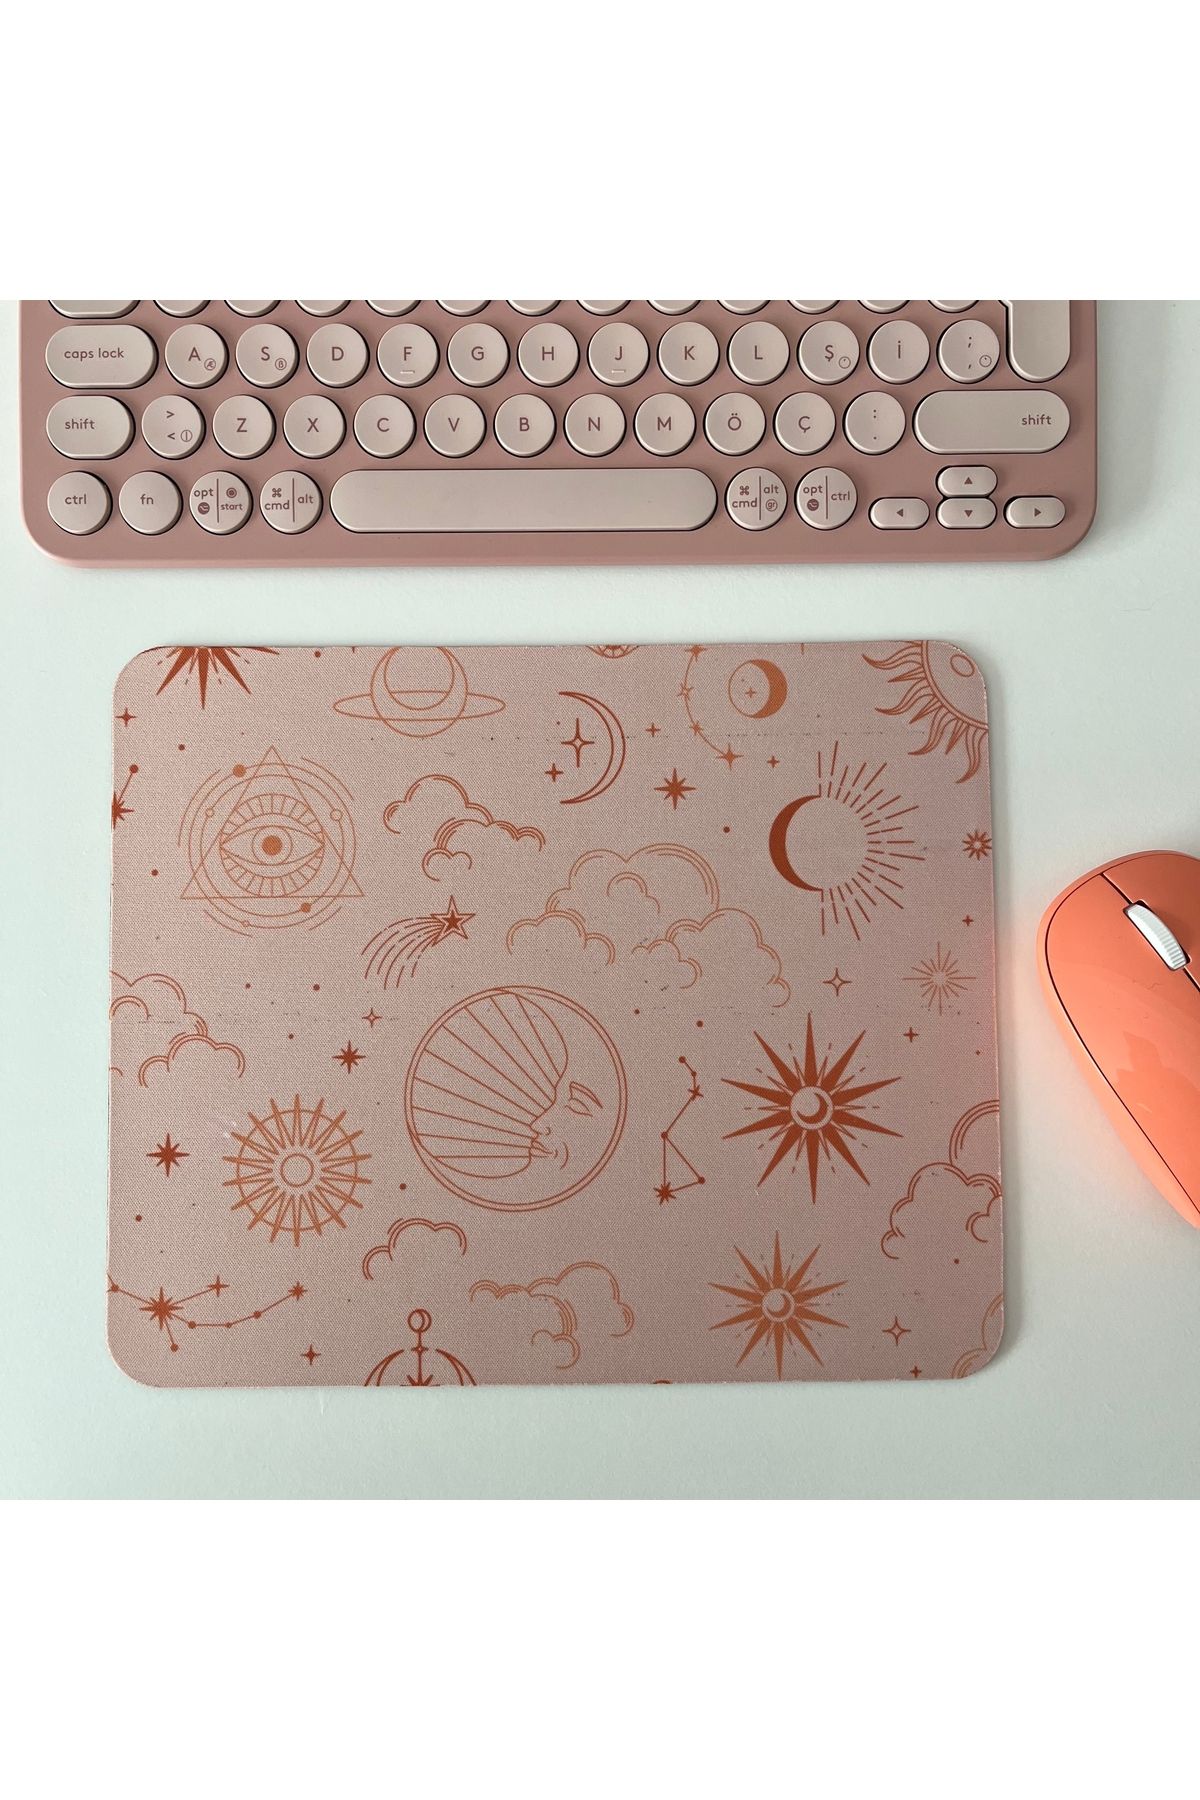 Duxy Manifest Desenli Mouse Pad, 23x19 cm, Kaymaz Taban, Ev, Ofis ve Oyun için Rahat ve Yumuşak Mousepad